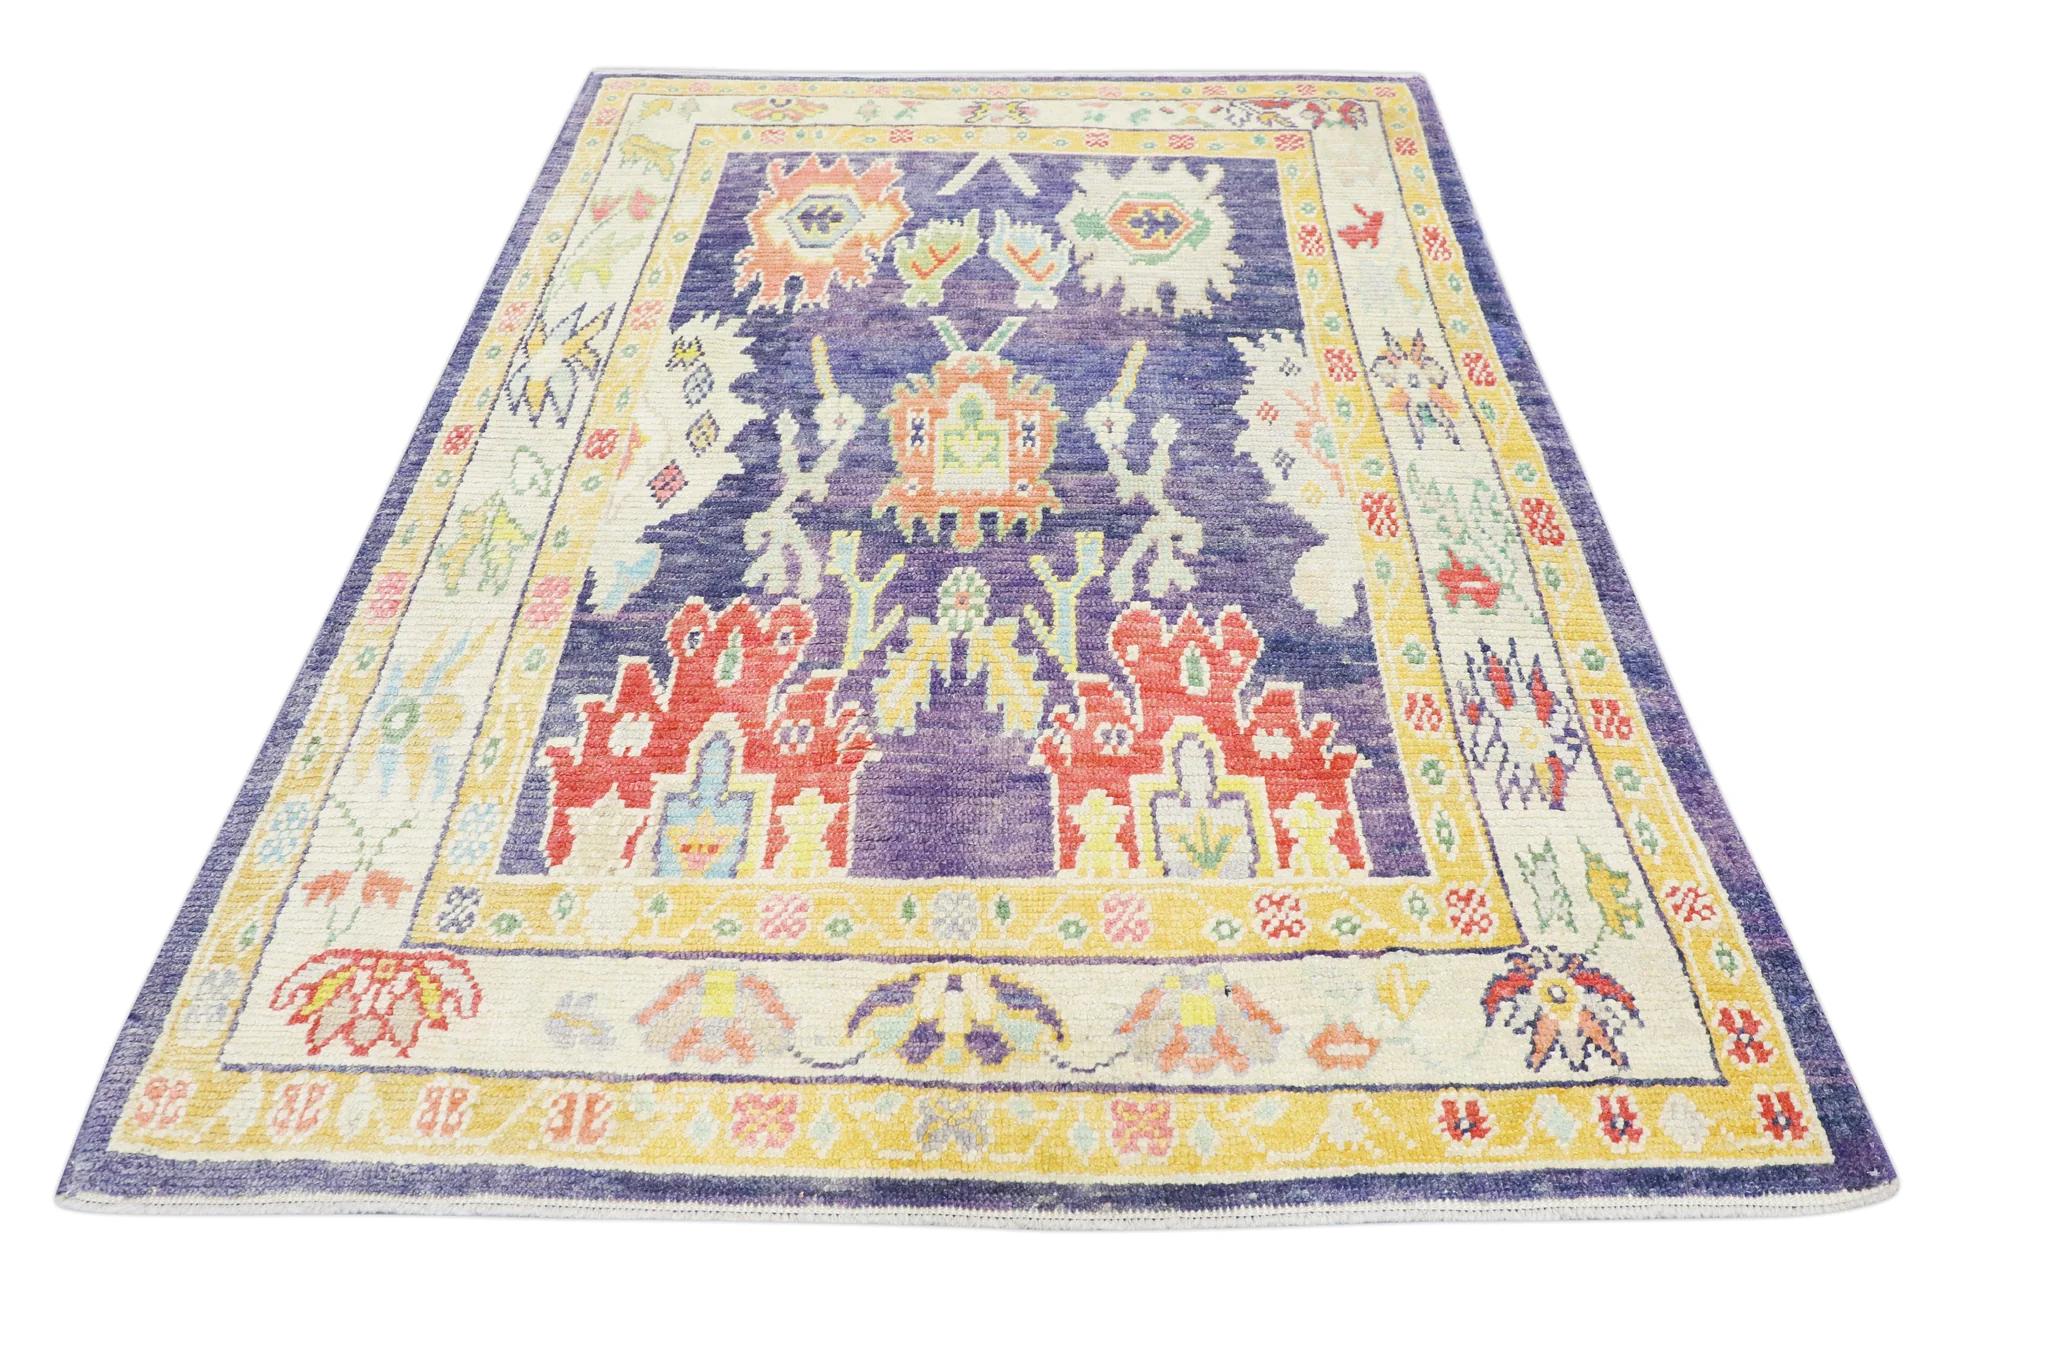 Handwoven Wool Carpet Turkish Oushak Rug 5'6